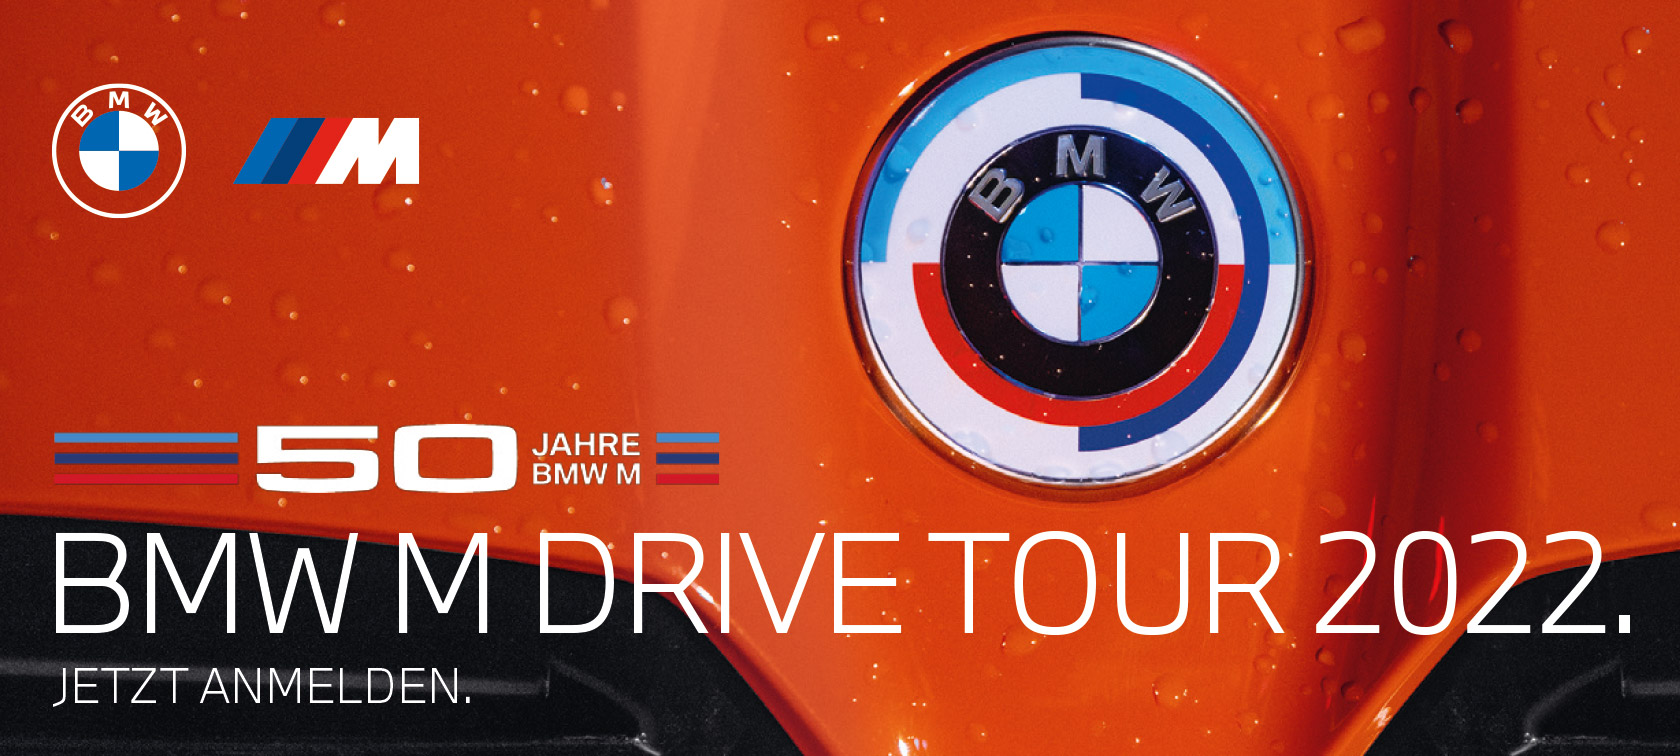 bmw-m-drive-tour-2022